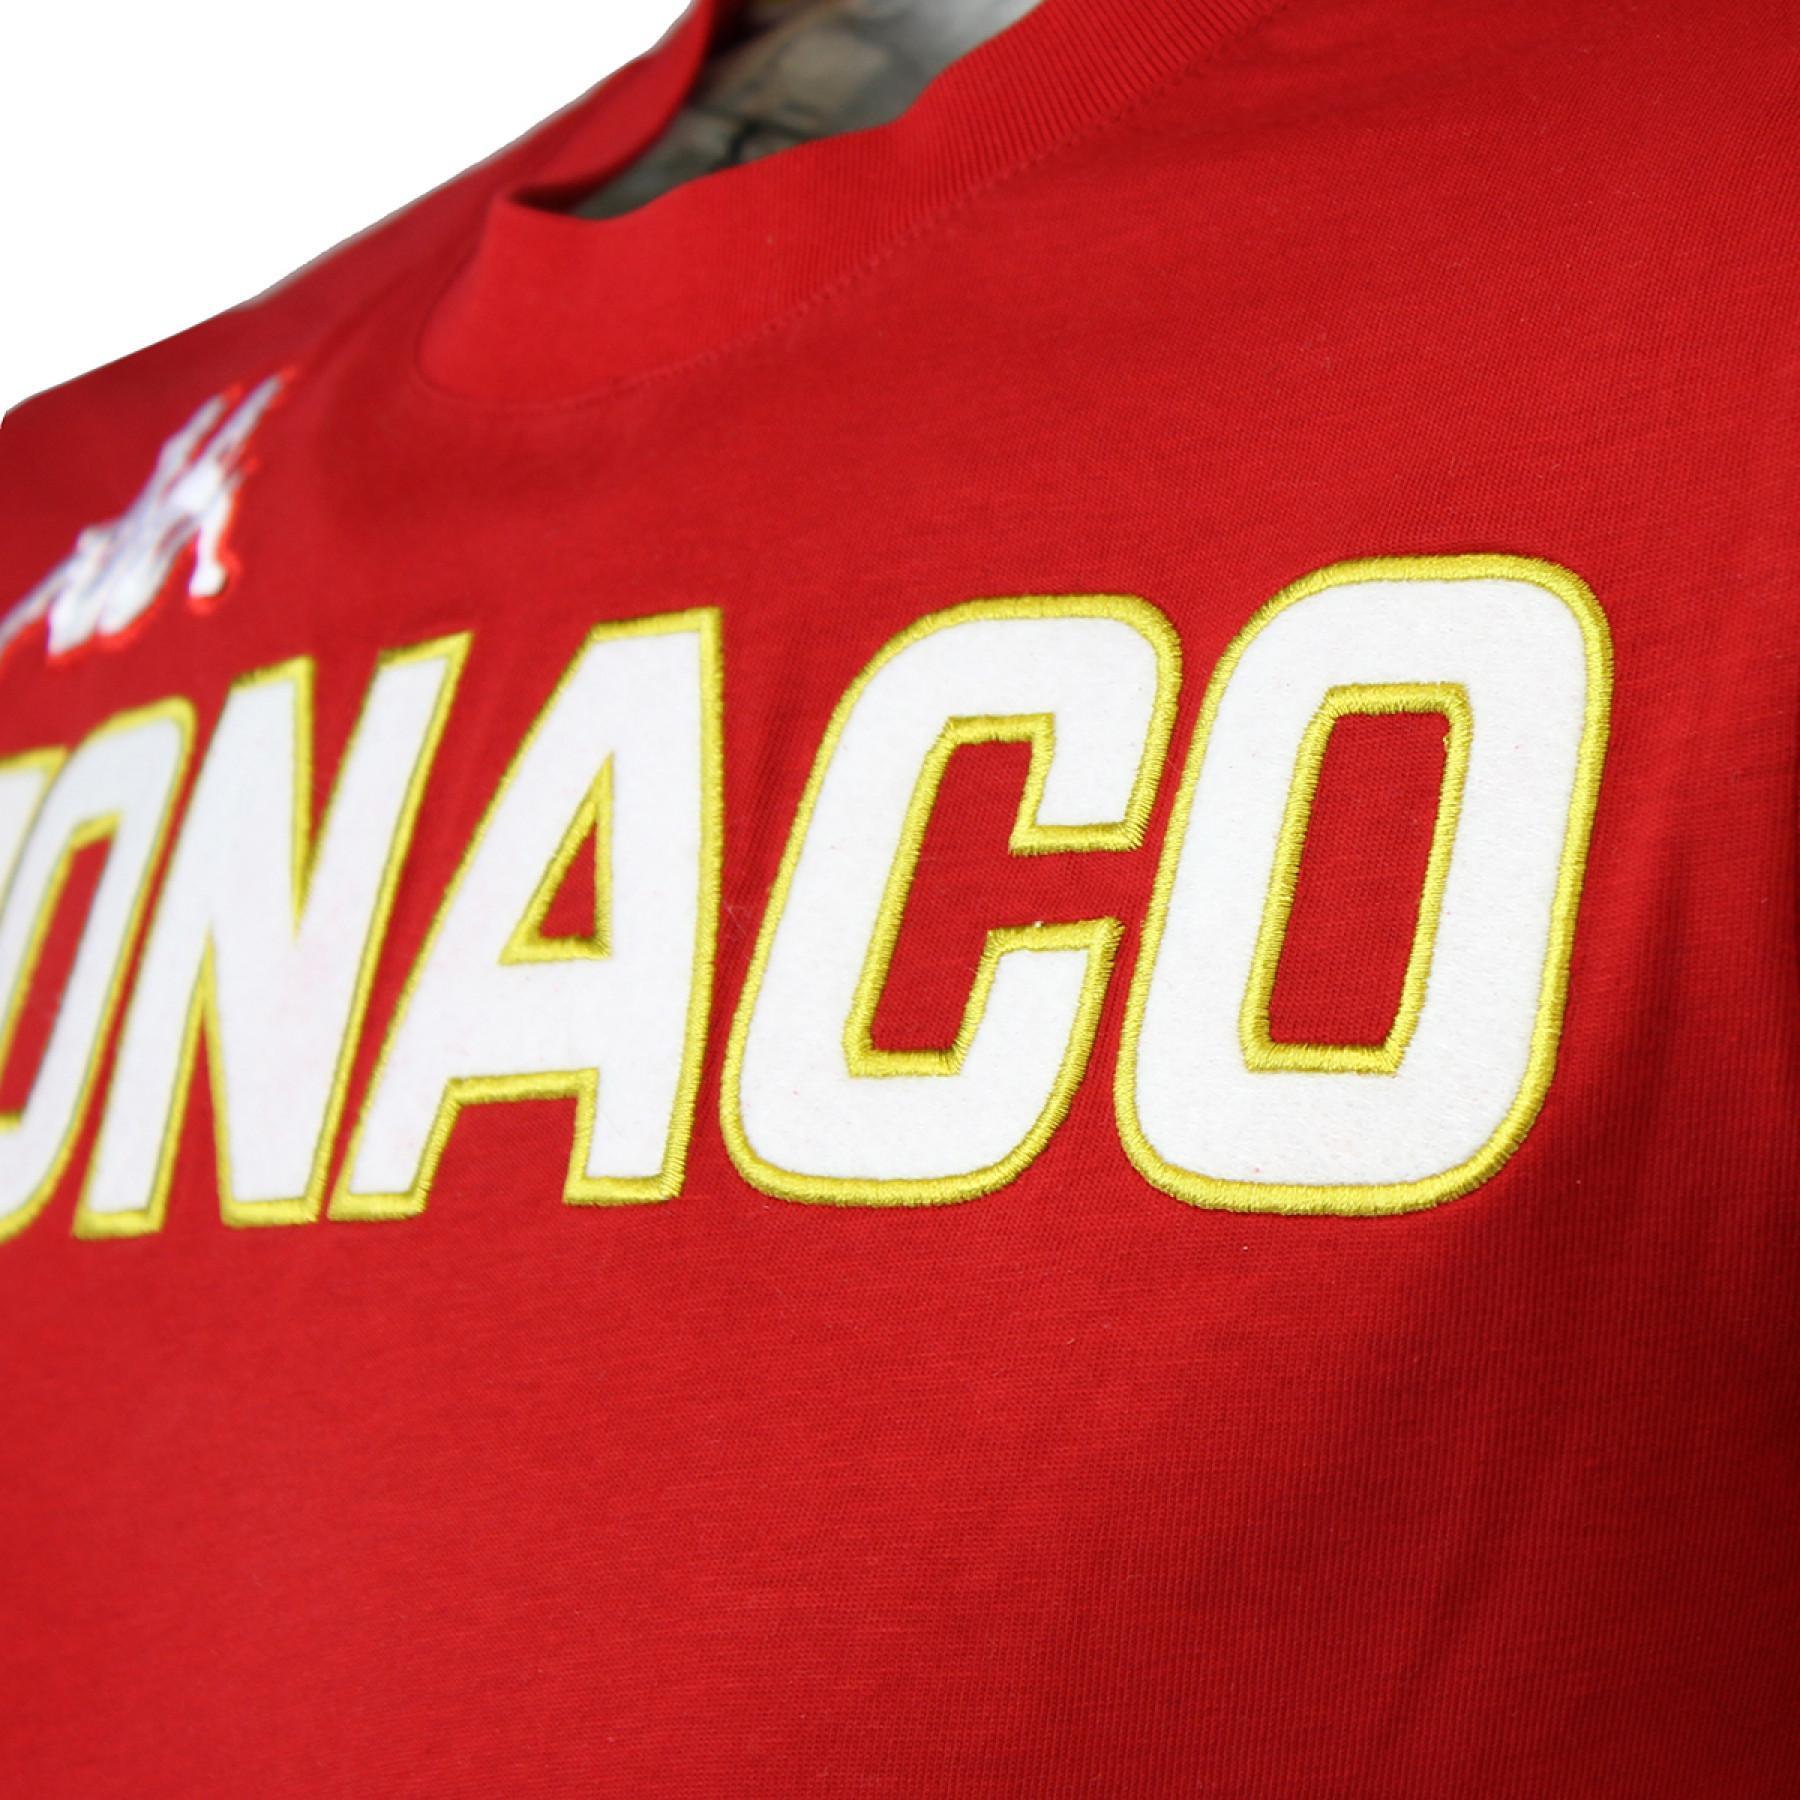 Camiseta niño eroi tee AS Monaco